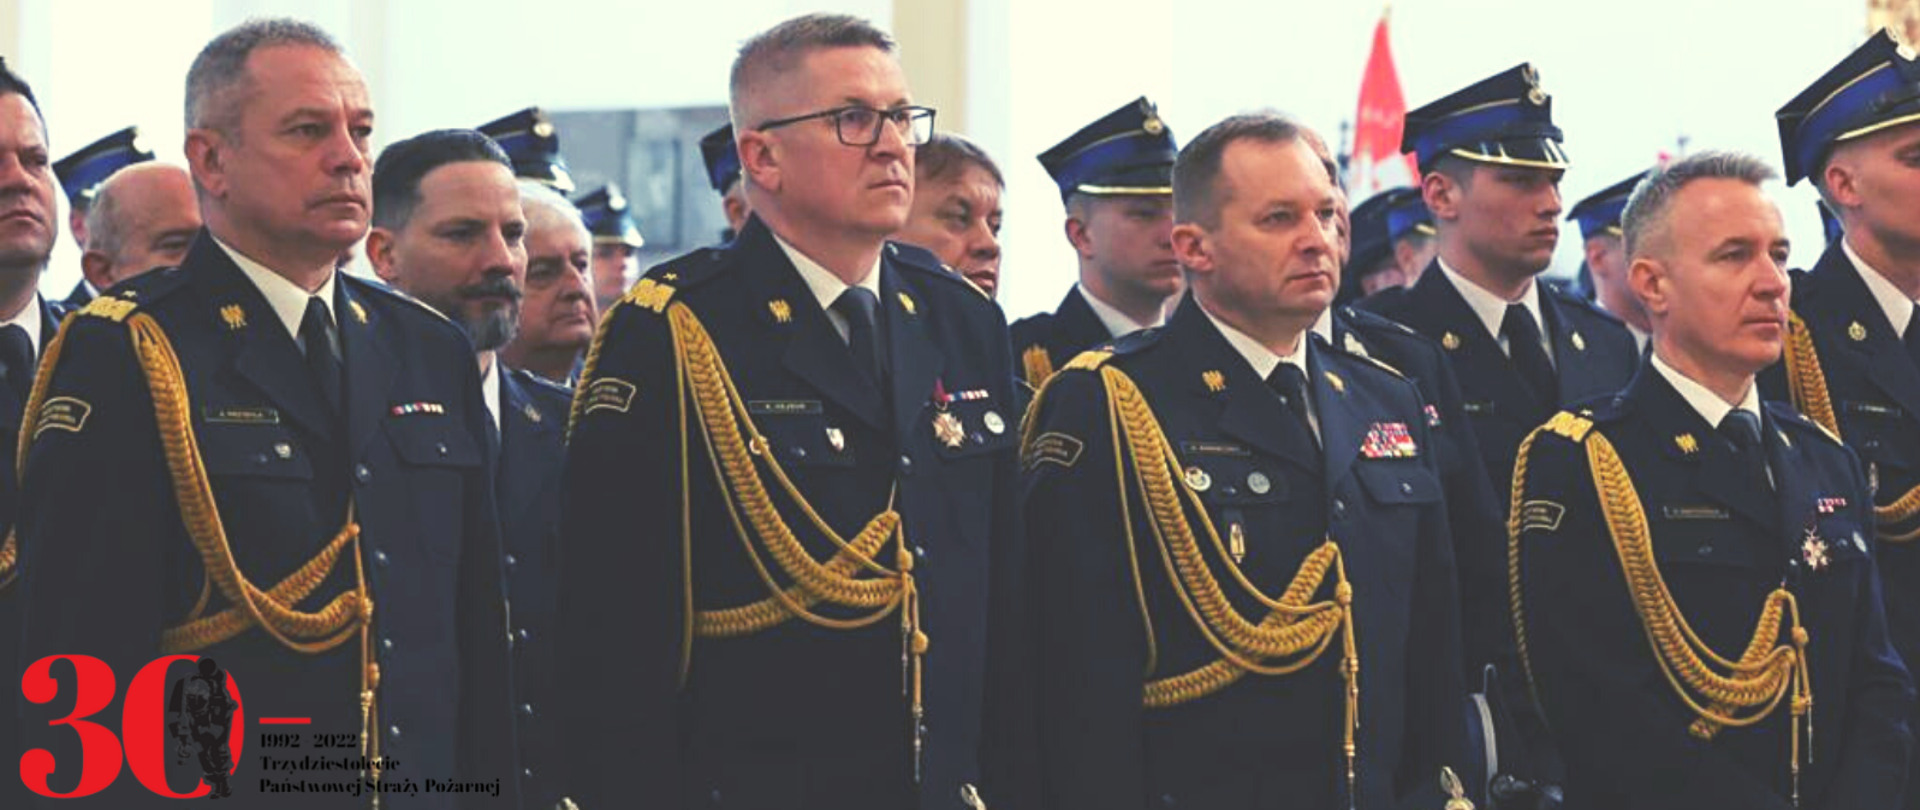 Komendant główny PSP wraz z zastępcami i innymi strażakami stoją w ławach kościelnych podczas mszy świętej